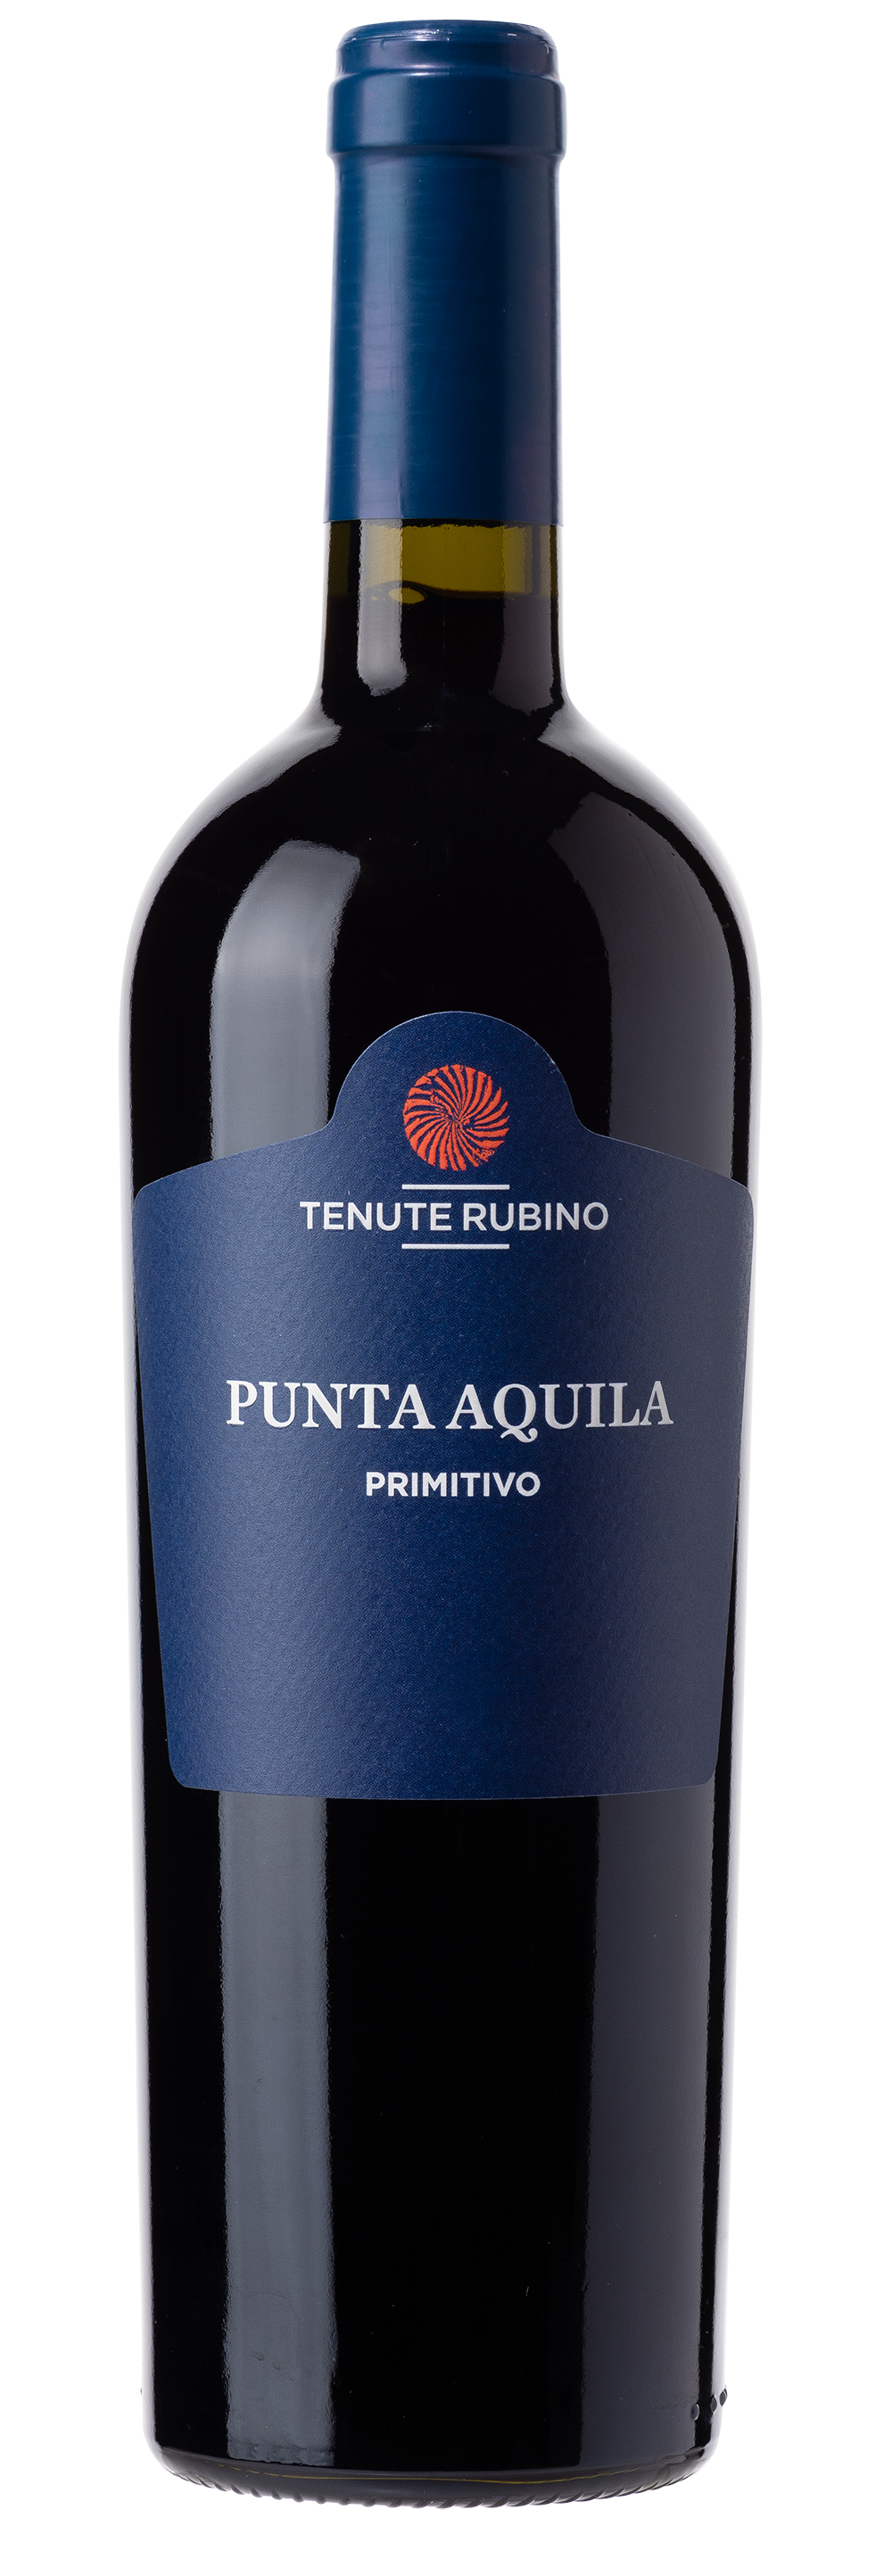 Rubino viDeli guter Aquila einfach Punta - Primitivo Wein | Salento